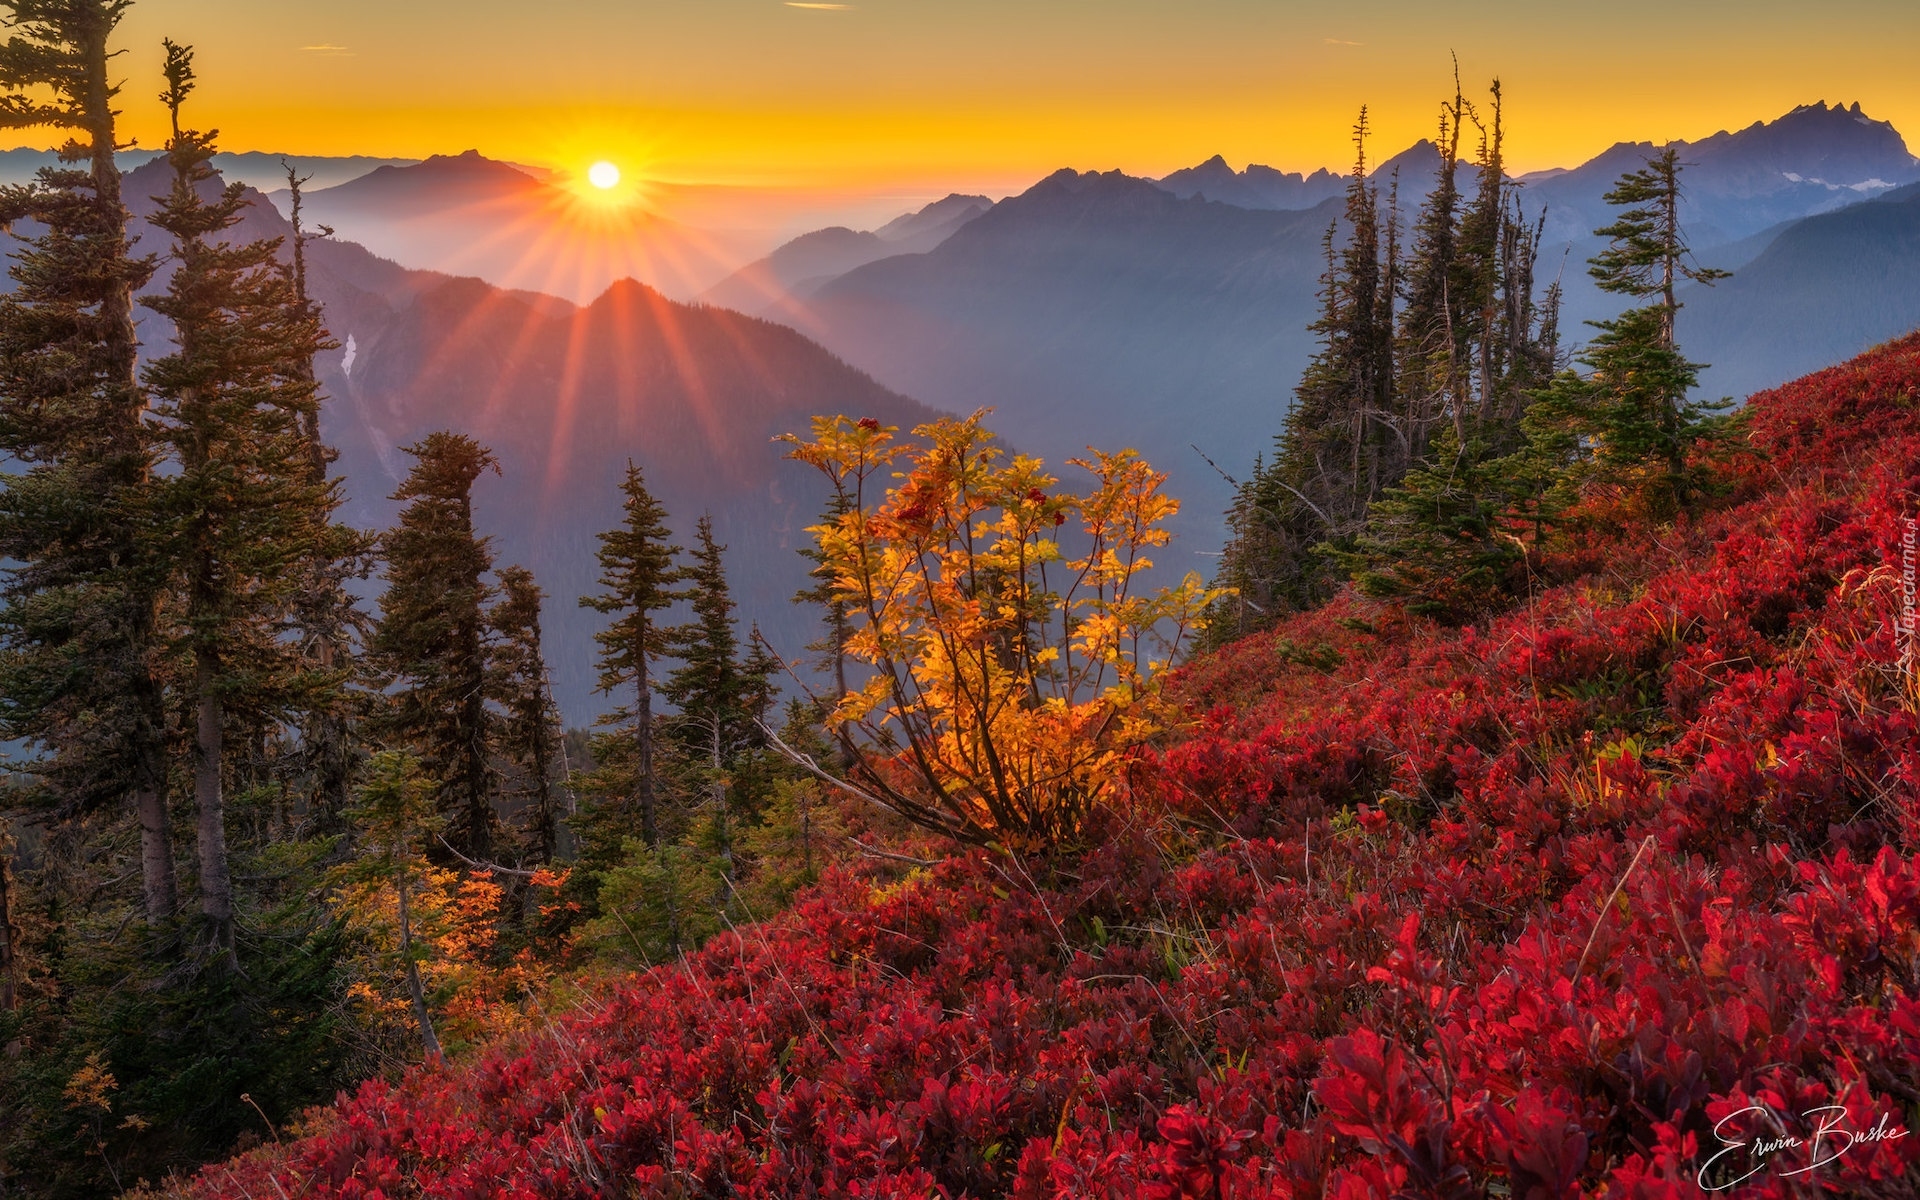 Jesień, Zachód słońca, Promienie, Drzewa, Kolorowa, Roślinność, Góry Kaskadowe, Stan Wyszyngton, Stany Zjednoczone